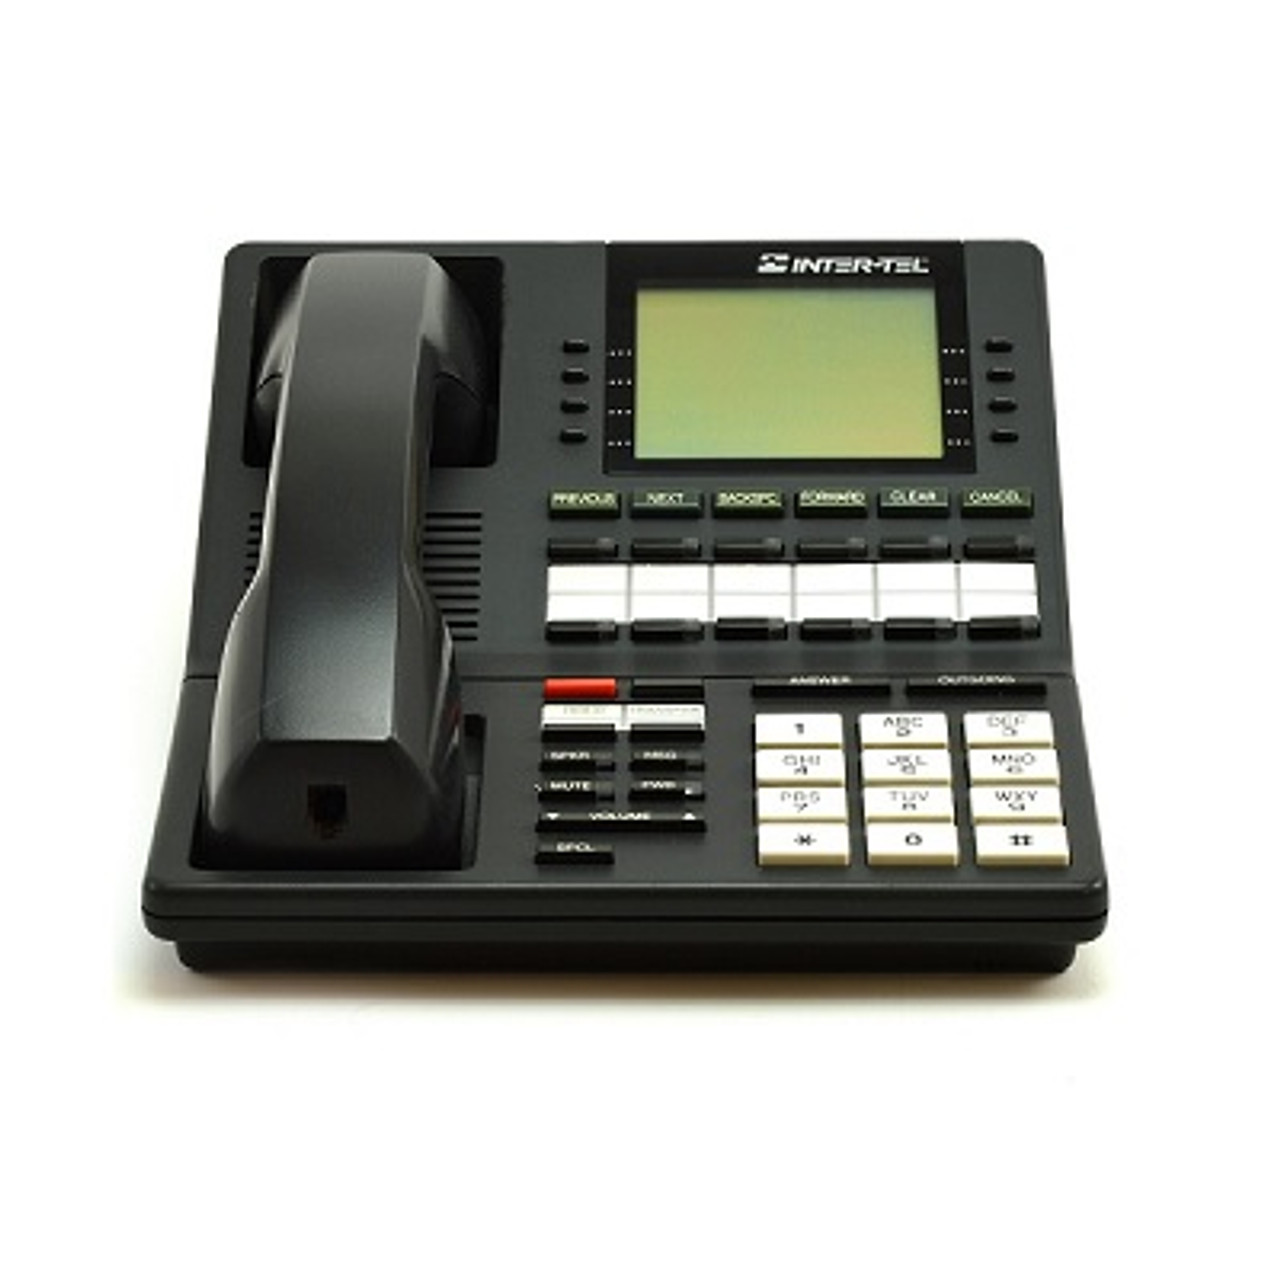 Inter-Tel Axxess 550.4100 Digital Phone